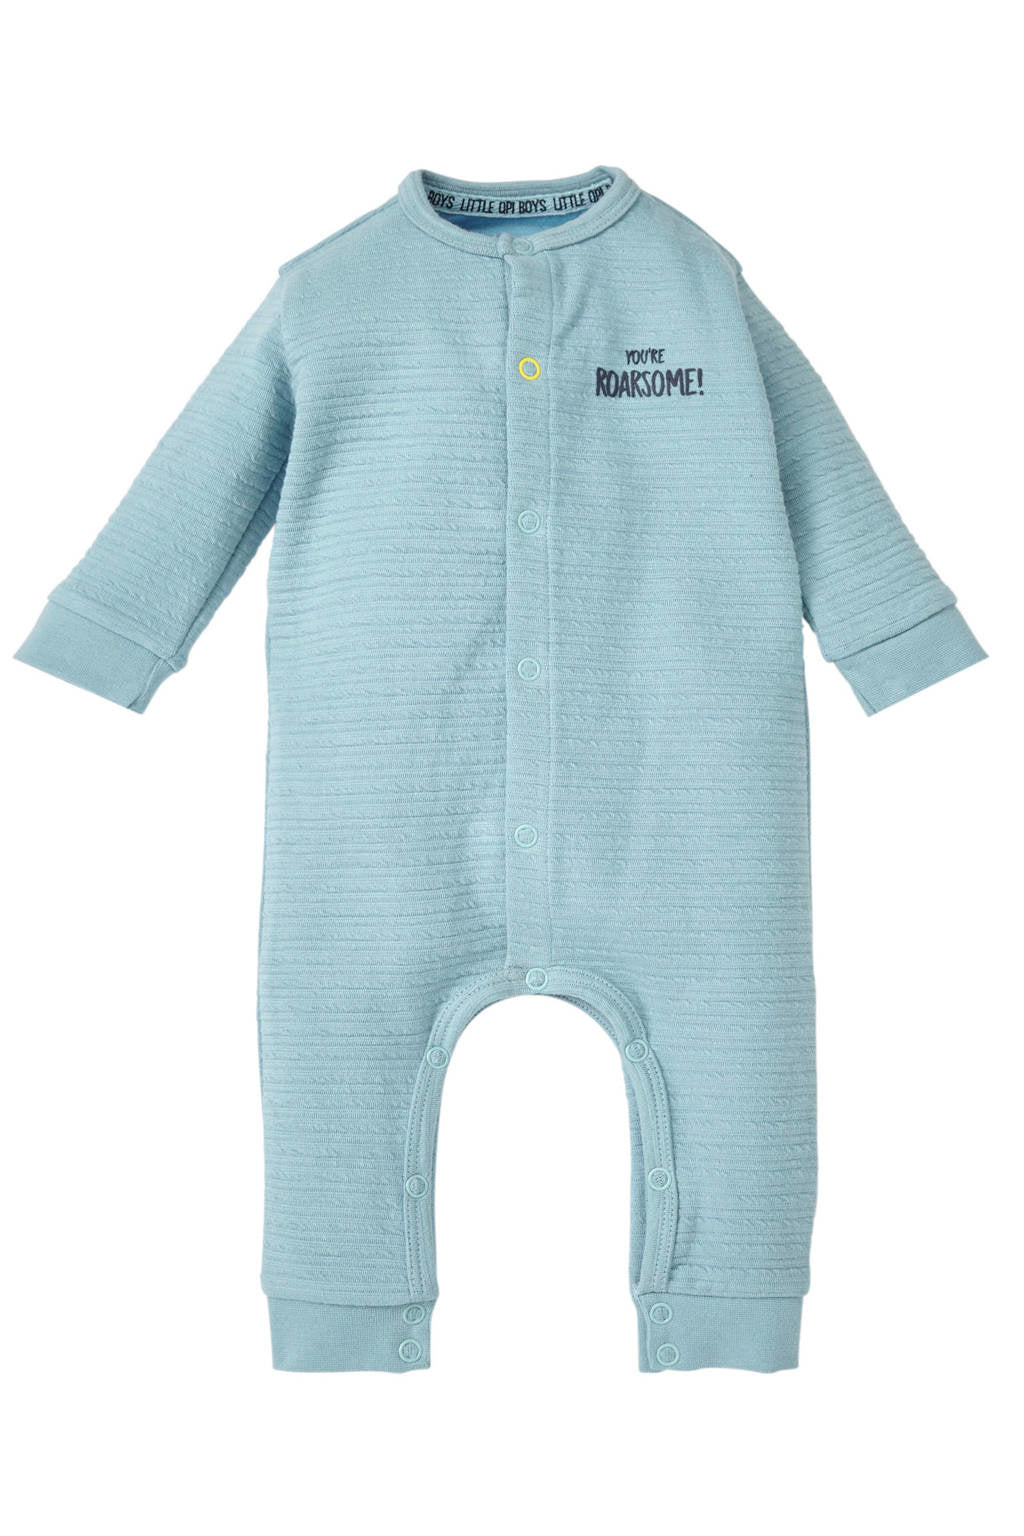 Quapi Baby suit Xiaro dream blue Newborn